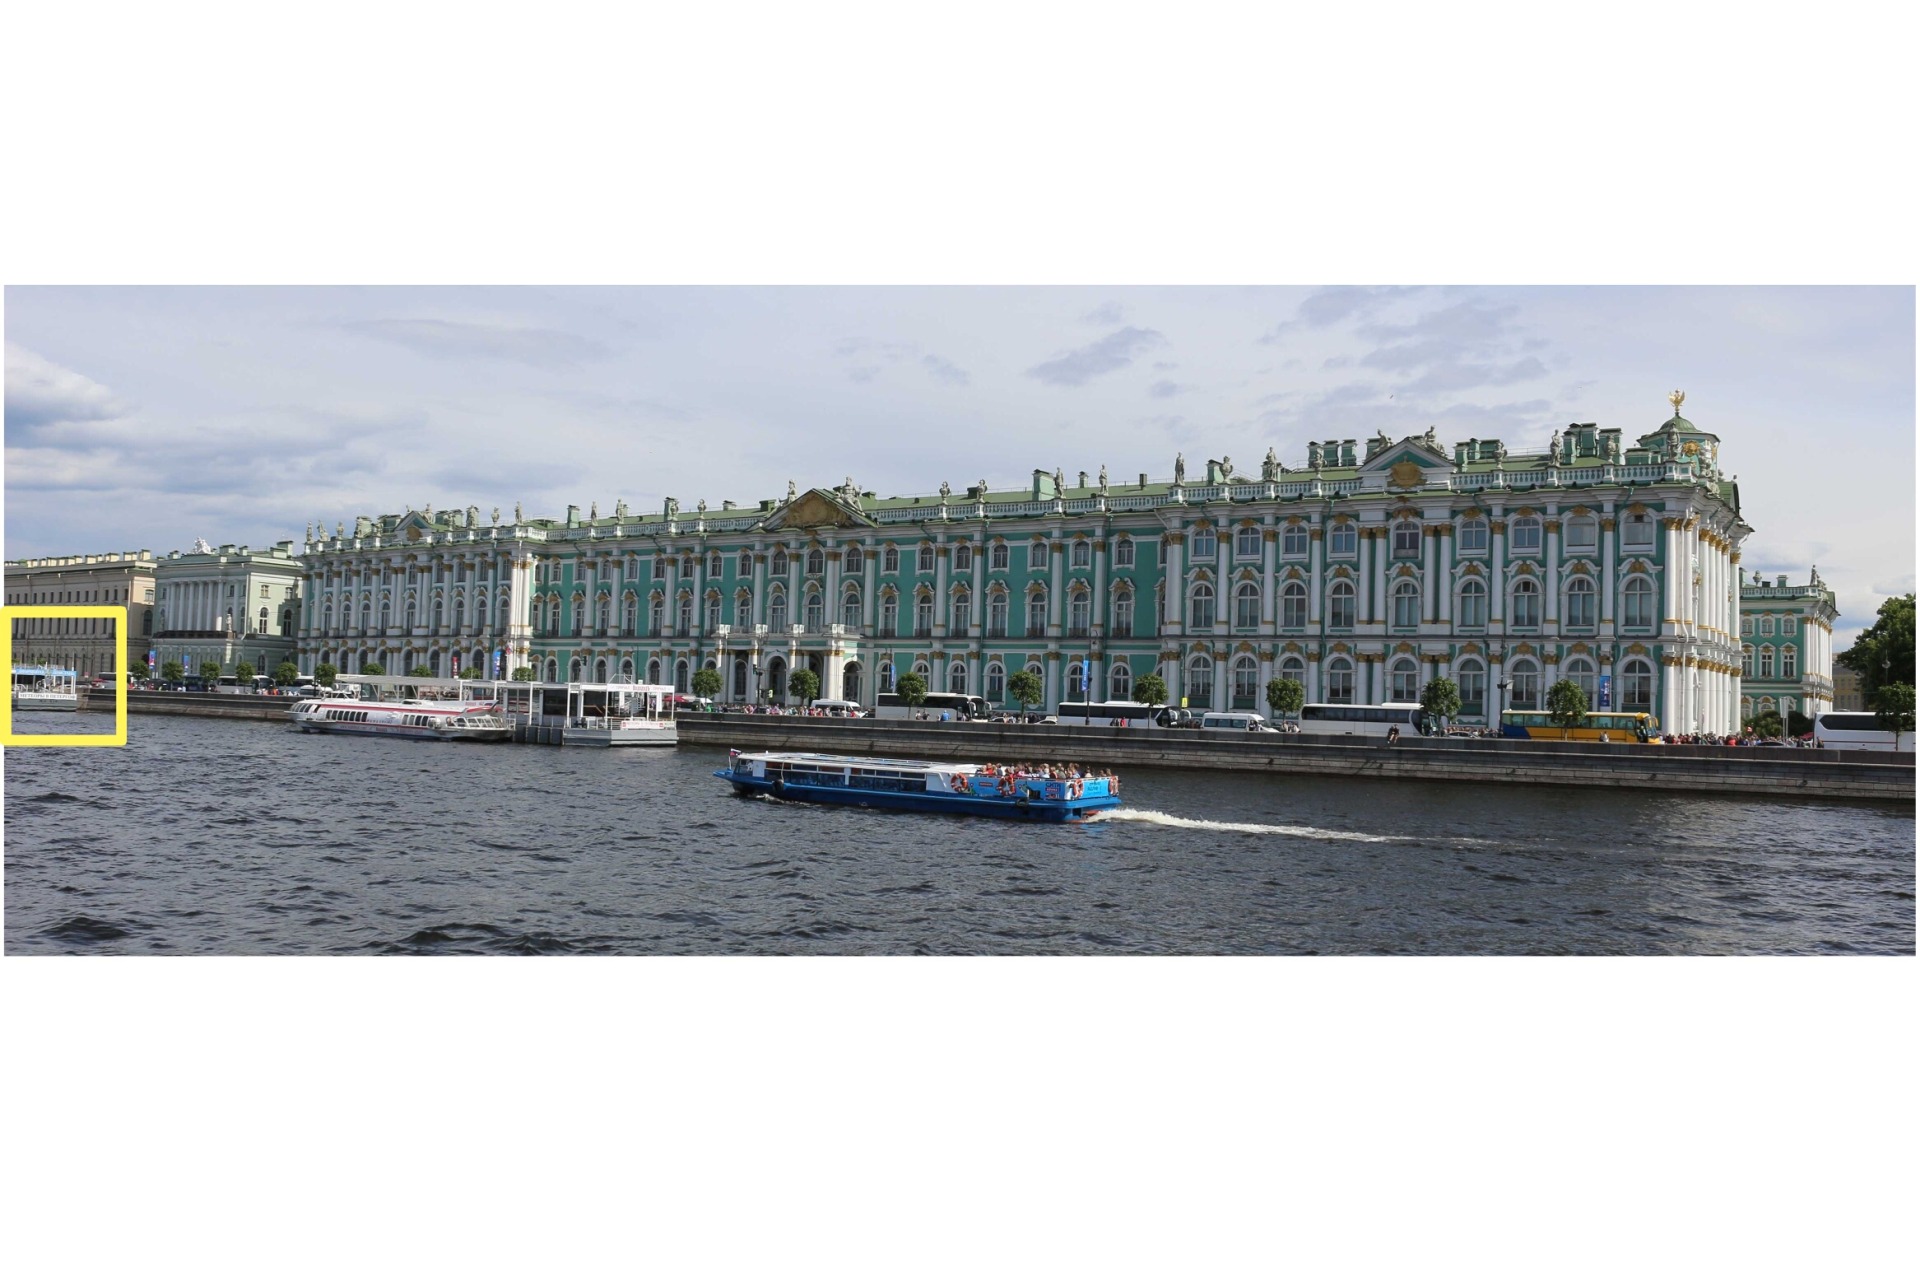 Как добраться до Дворцовой пристани на Дворцовой набережной, 36 - маршрут